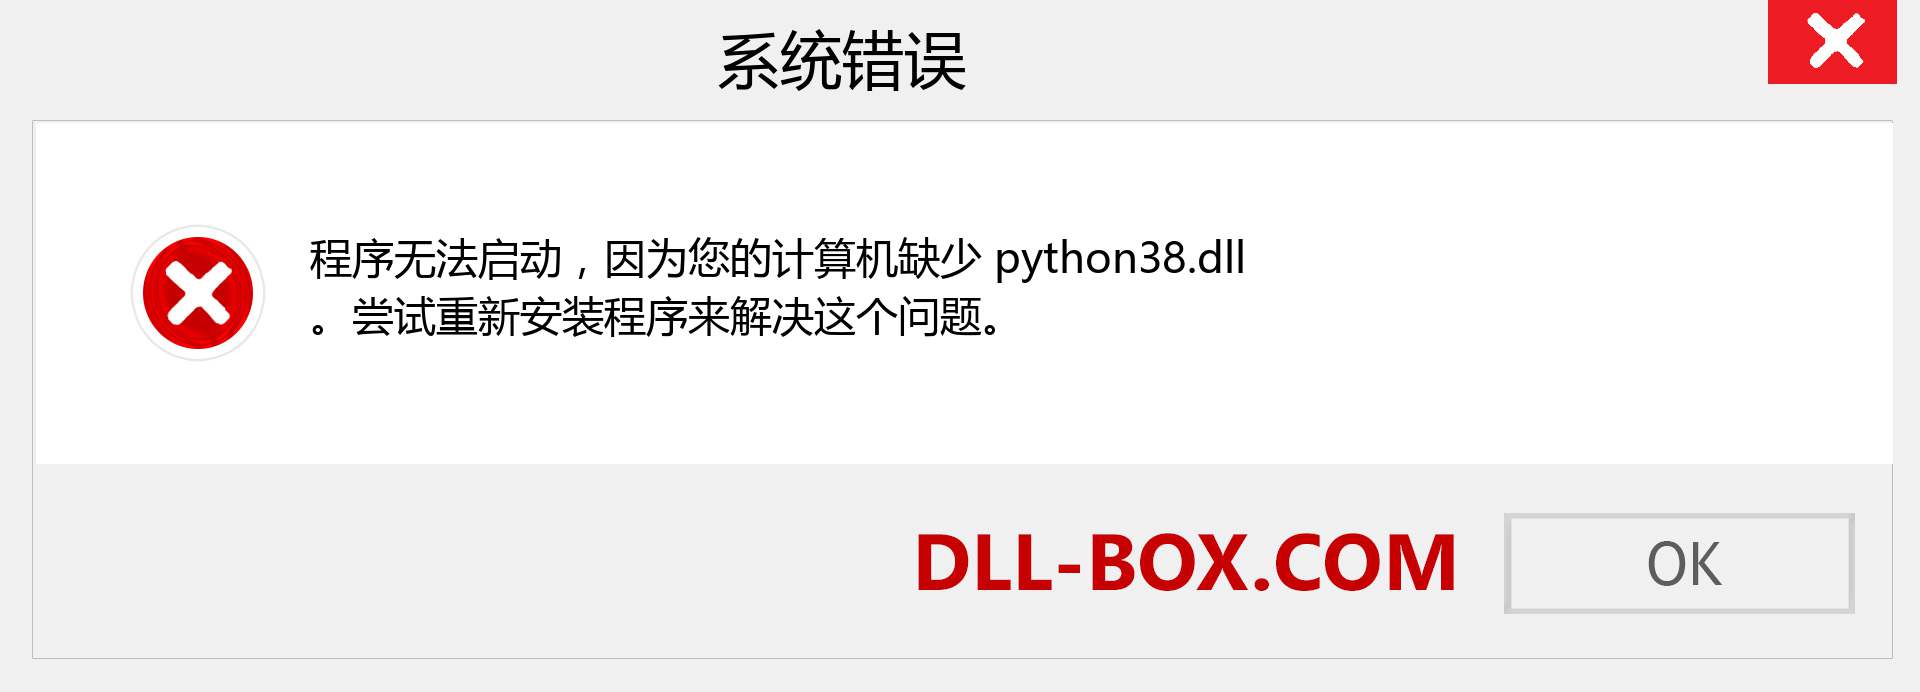 python38.dll 文件丢失？。 适用于 Windows 7、8、10 的下载 - 修复 Windows、照片、图像上的 python38 dll 丢失错误